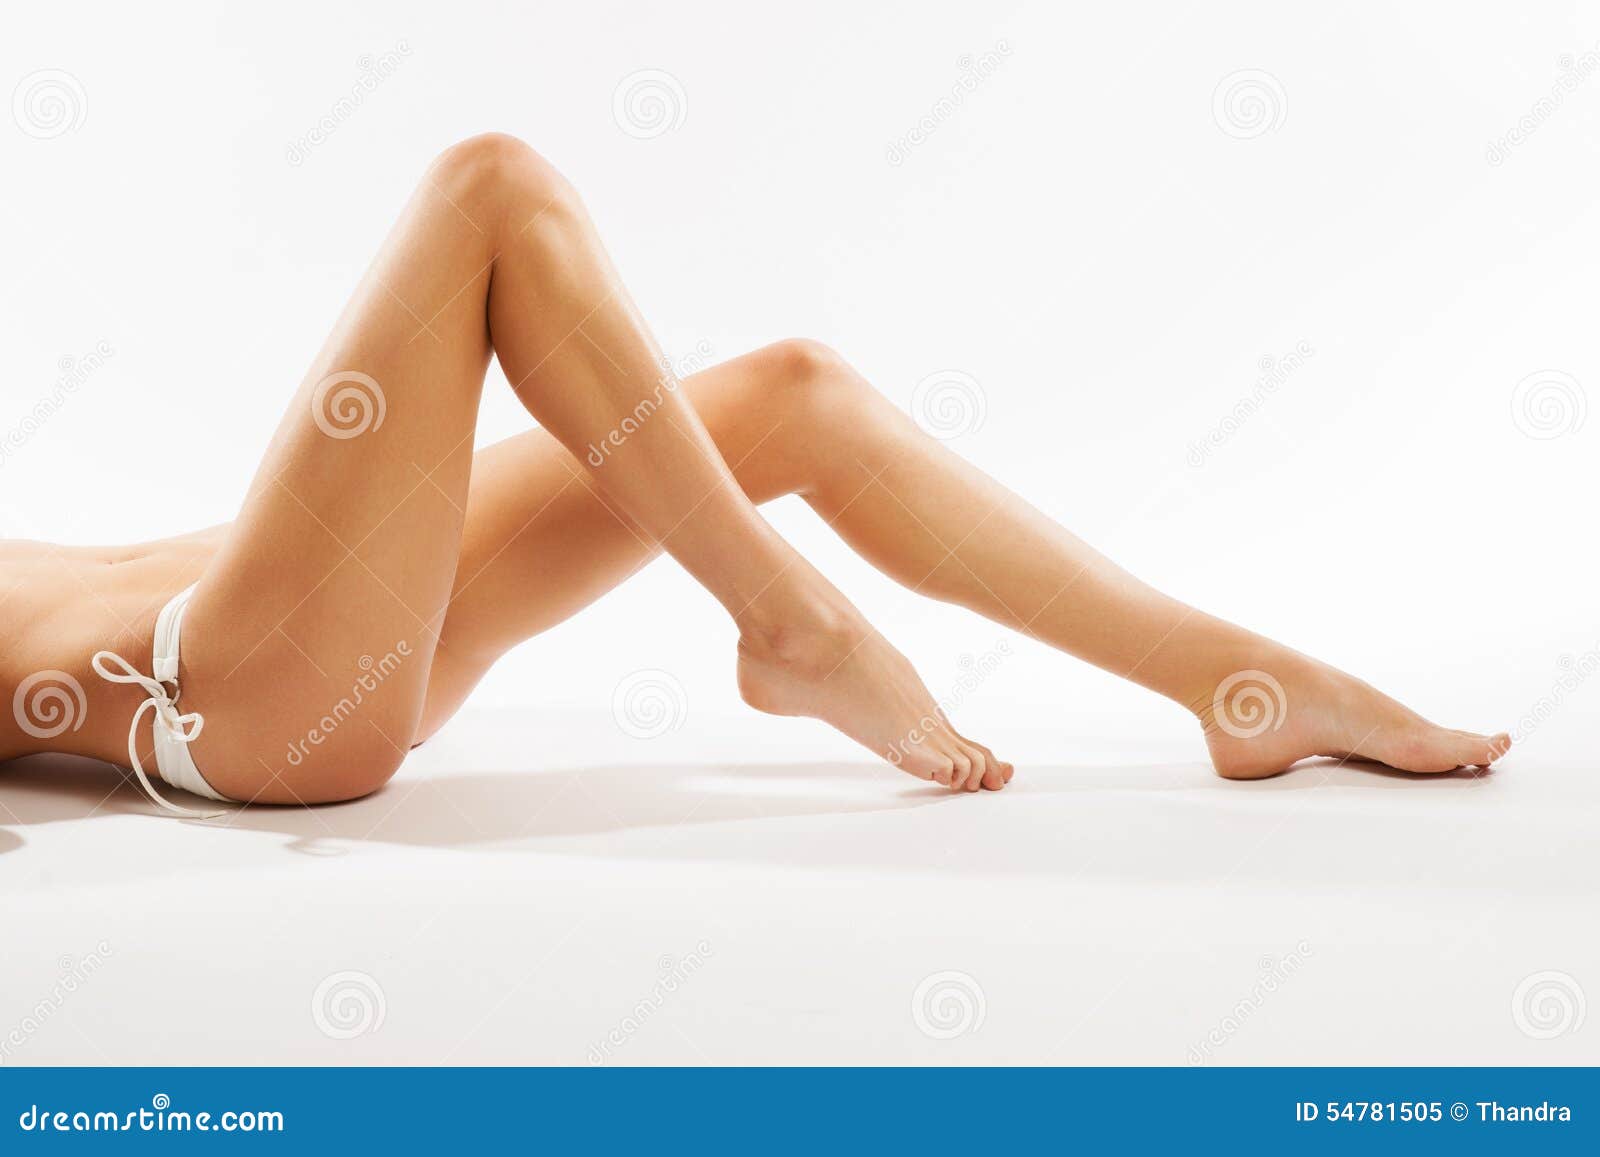 Best Nude Legs